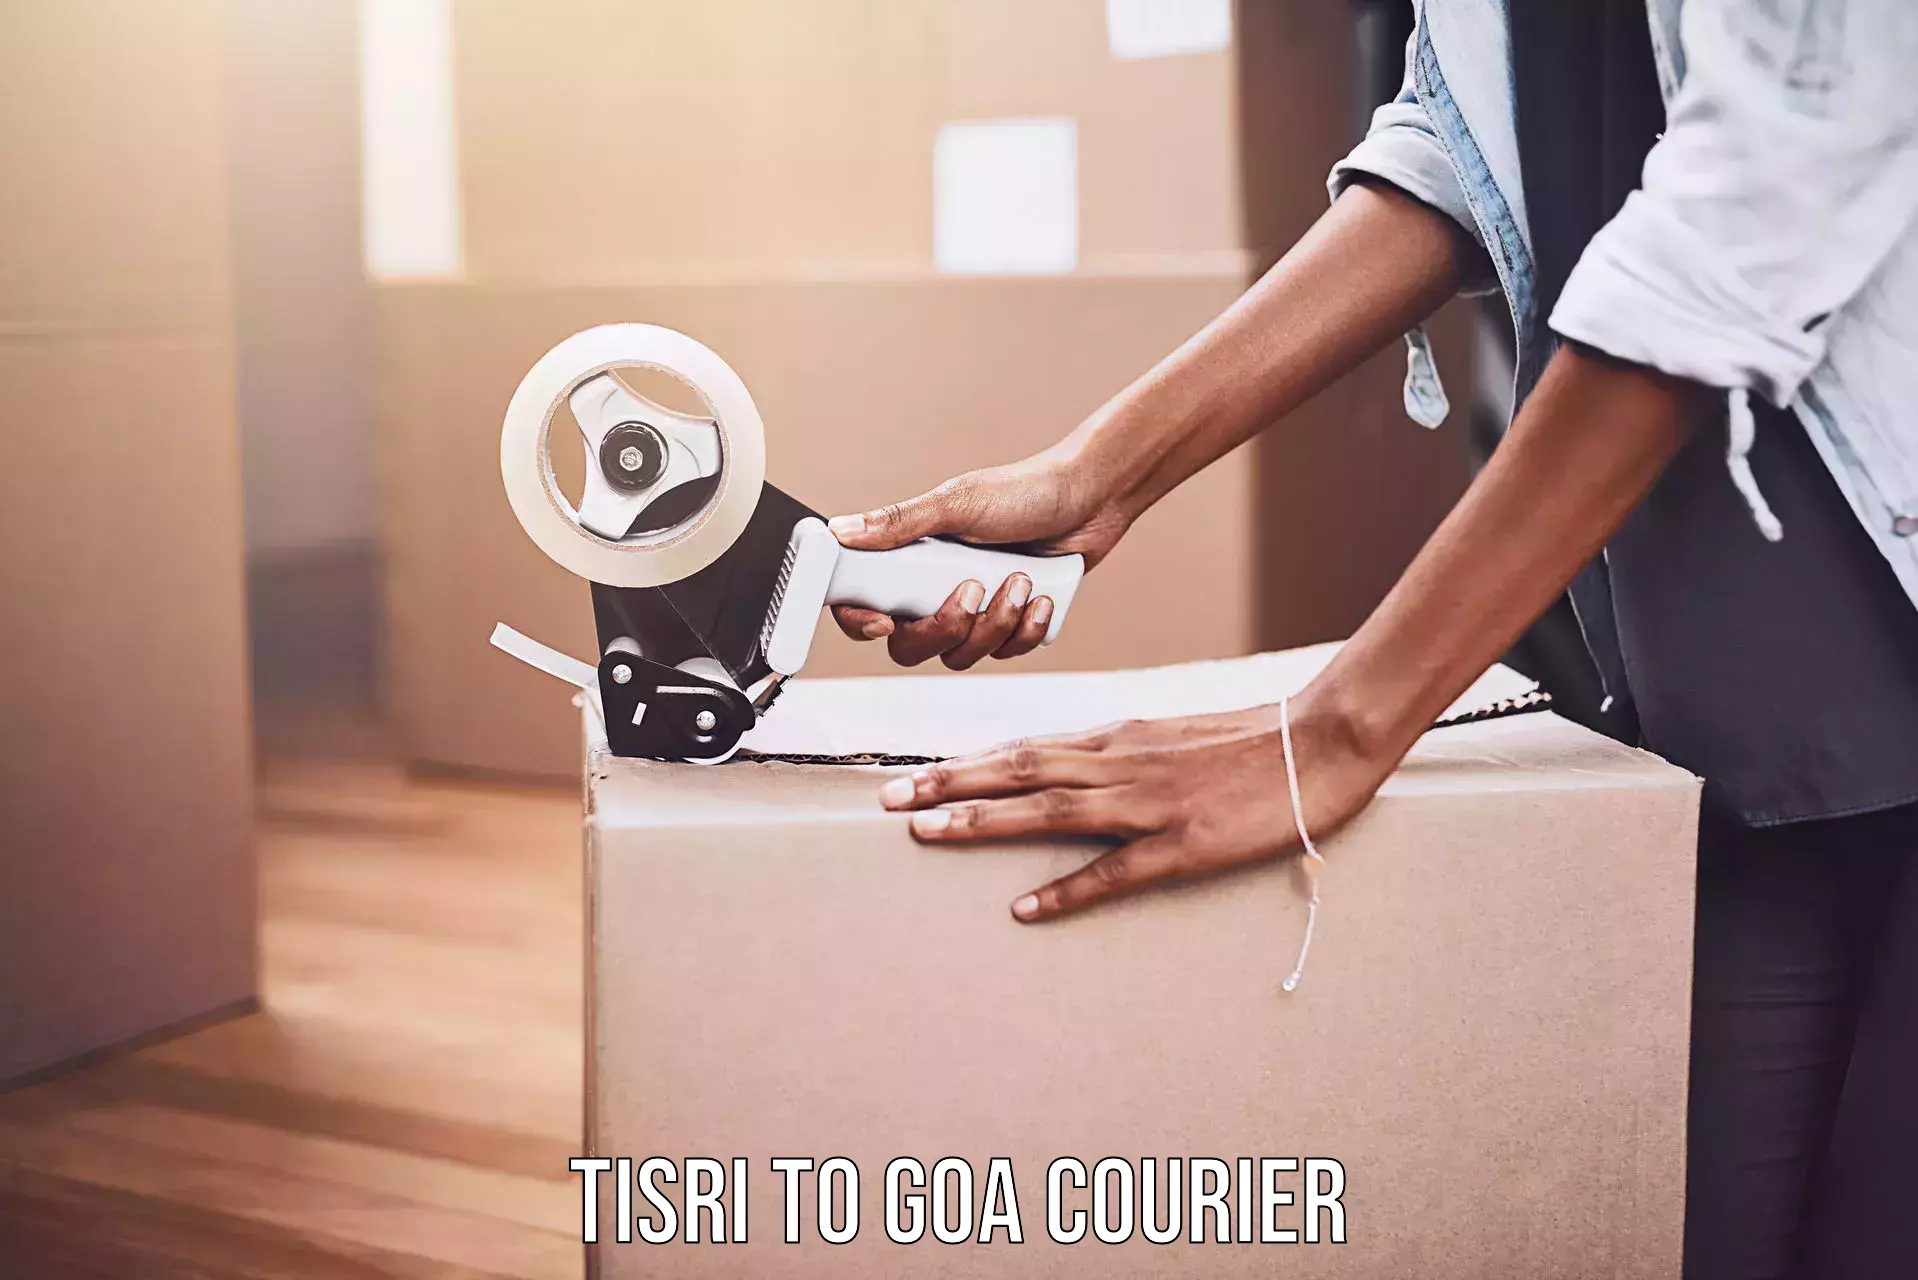 Customizable shipping options Tisri to Ponda